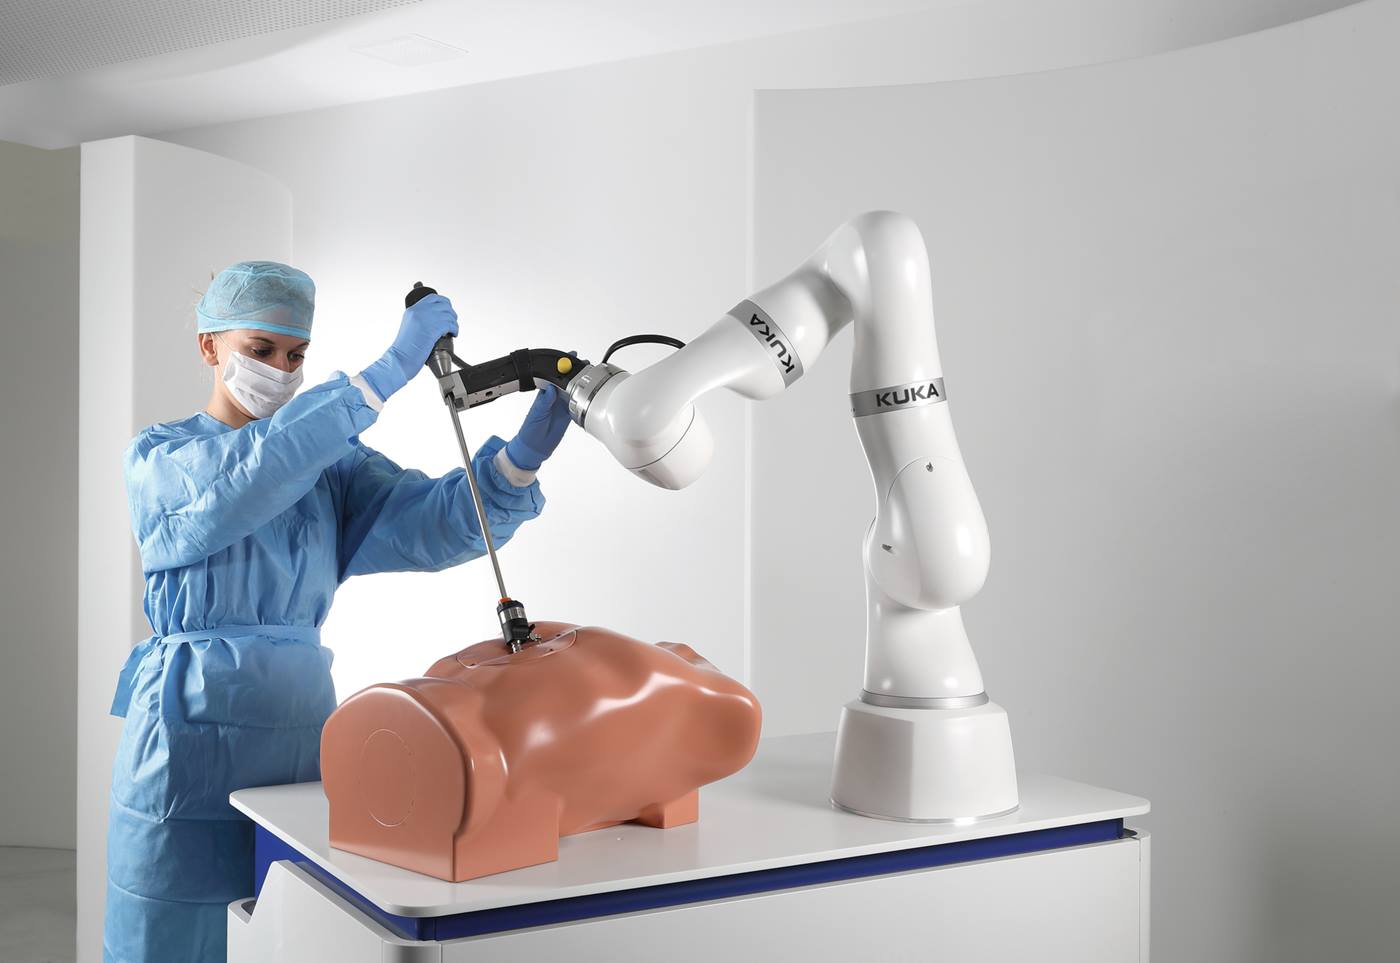 LBR Med Medical Robotics